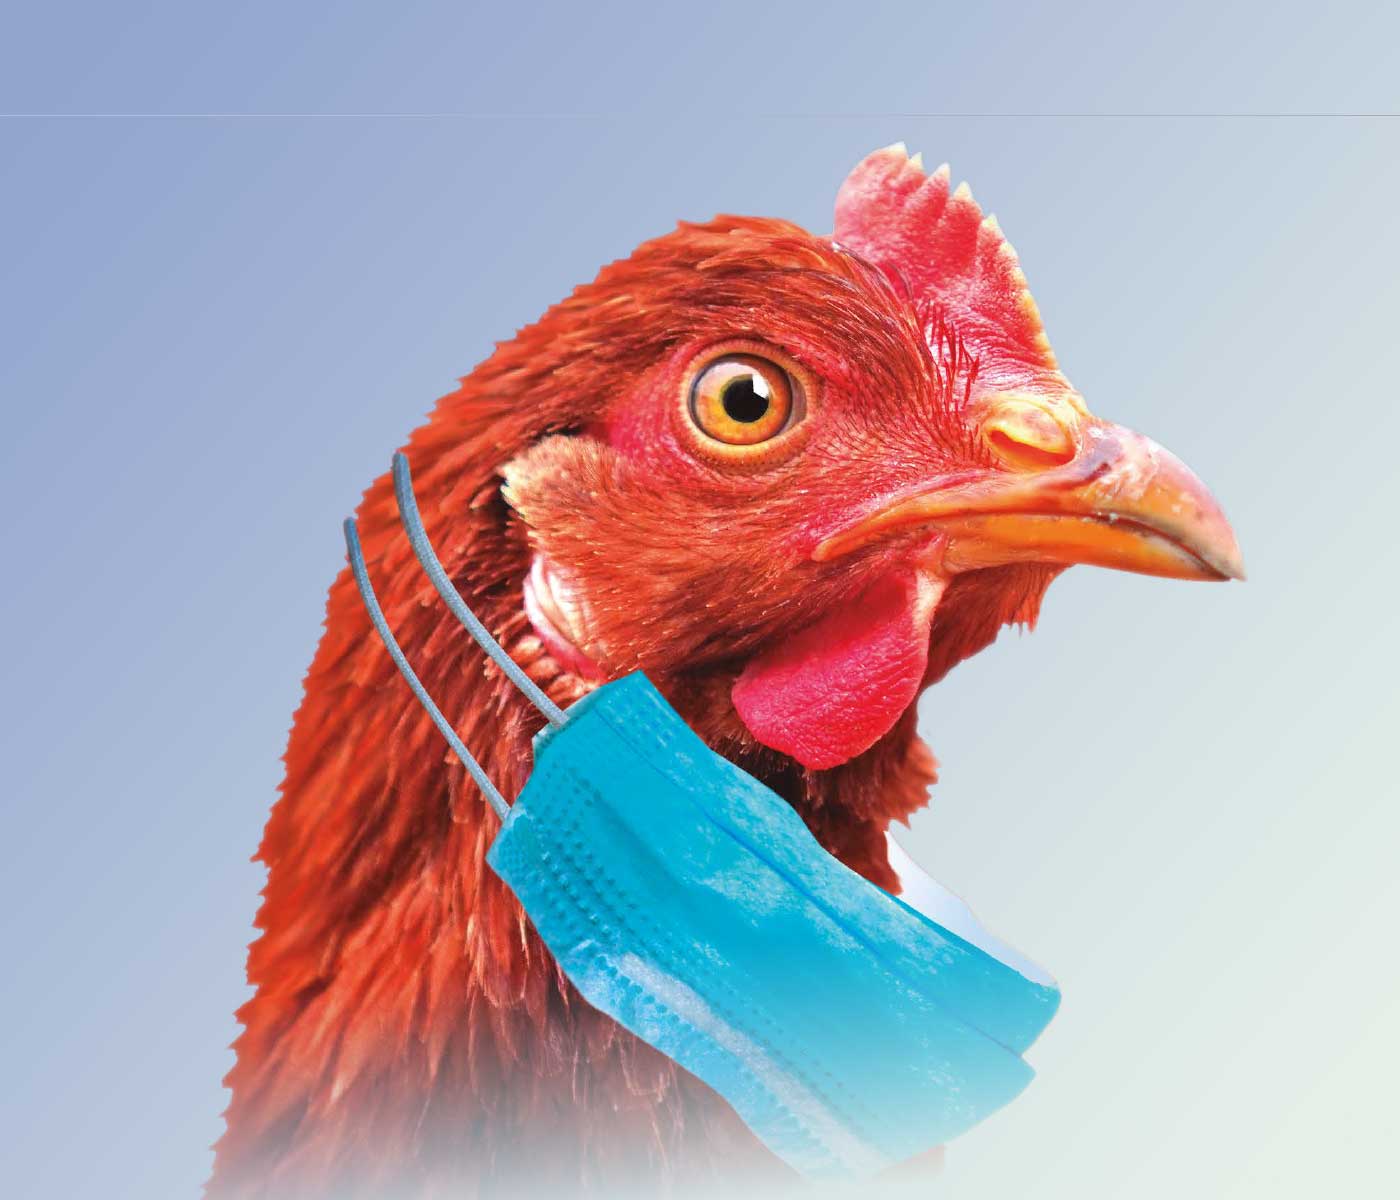 Biocidas en avicultura: Limpieza y desinfección